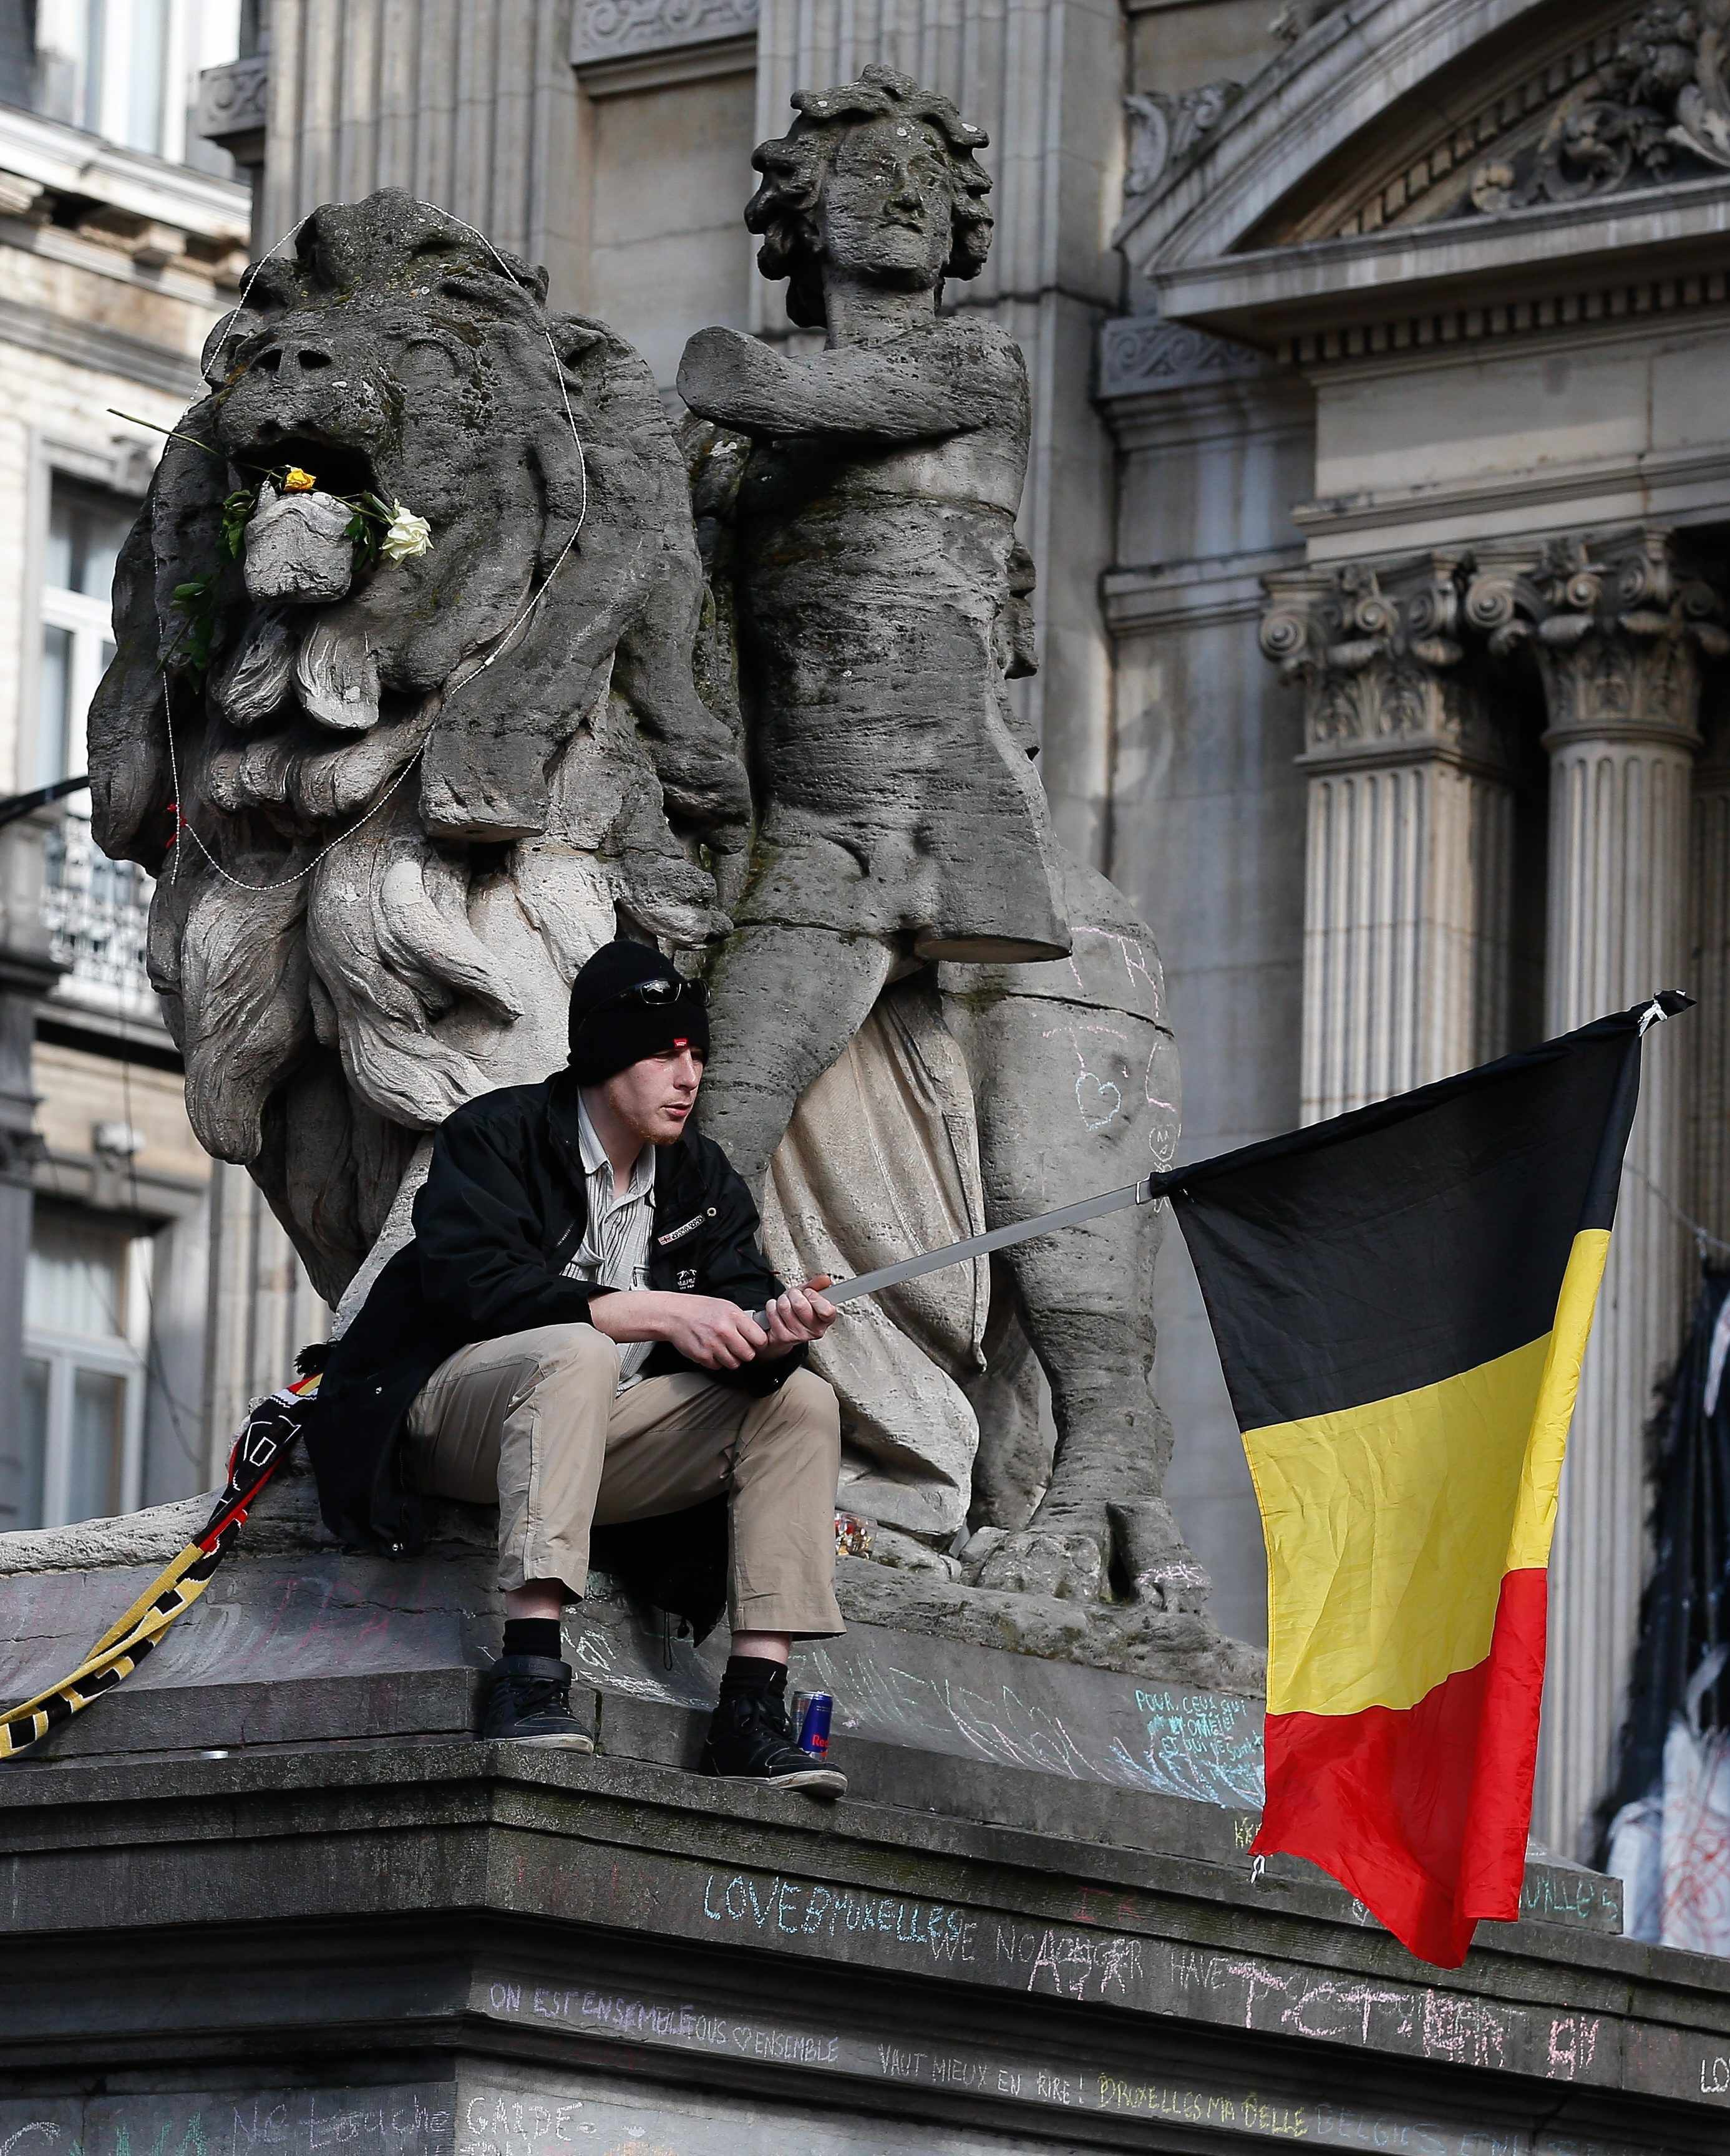 Tres inculpats més a Bèlgica per terrorisme